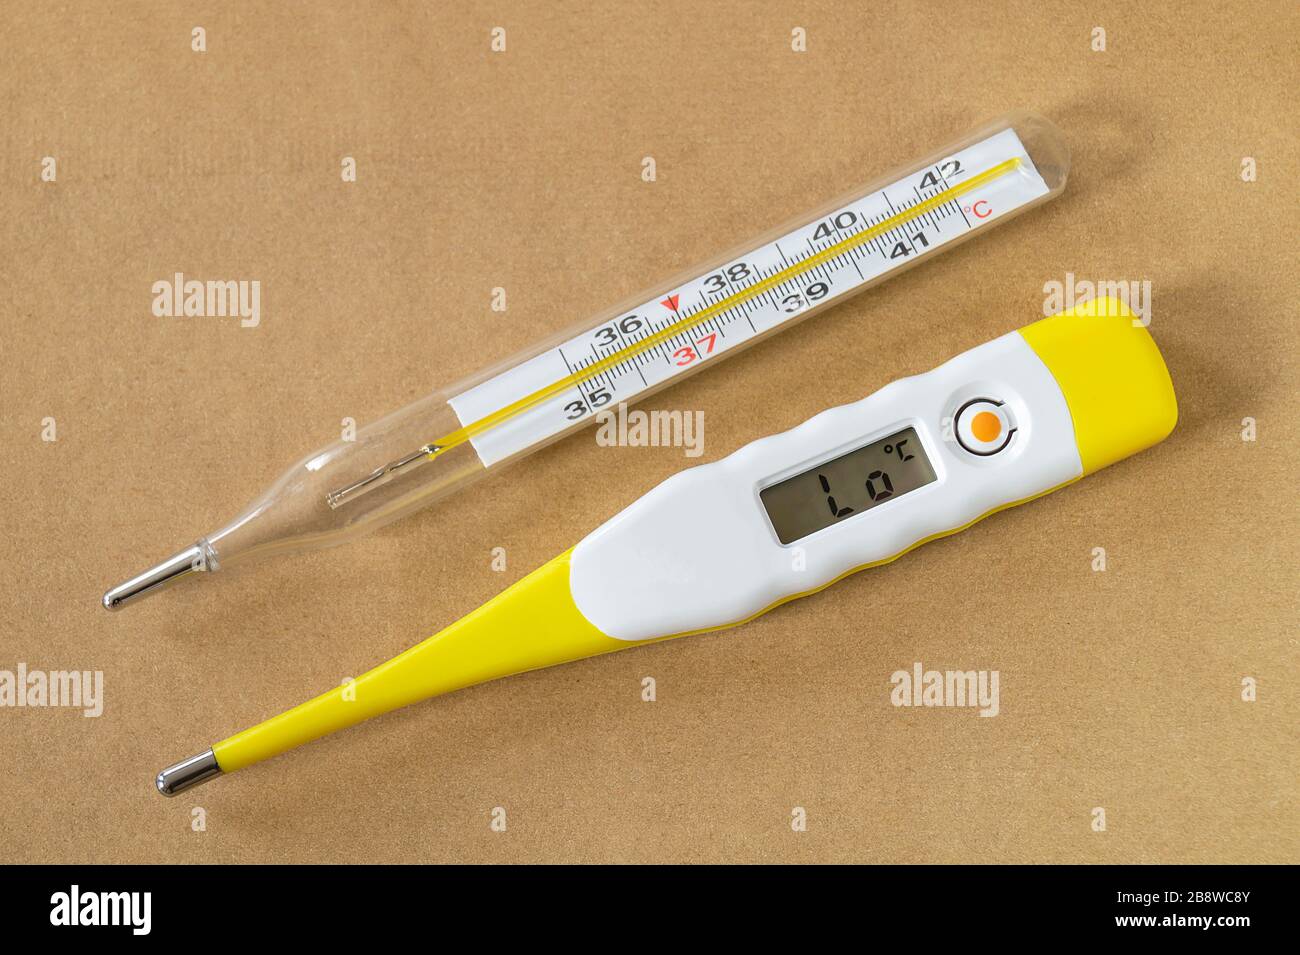 Das Messgerät zur Messung der Körpertemperatur. Das medizinische Gerät auf grauem Hintergrund. Stockfoto